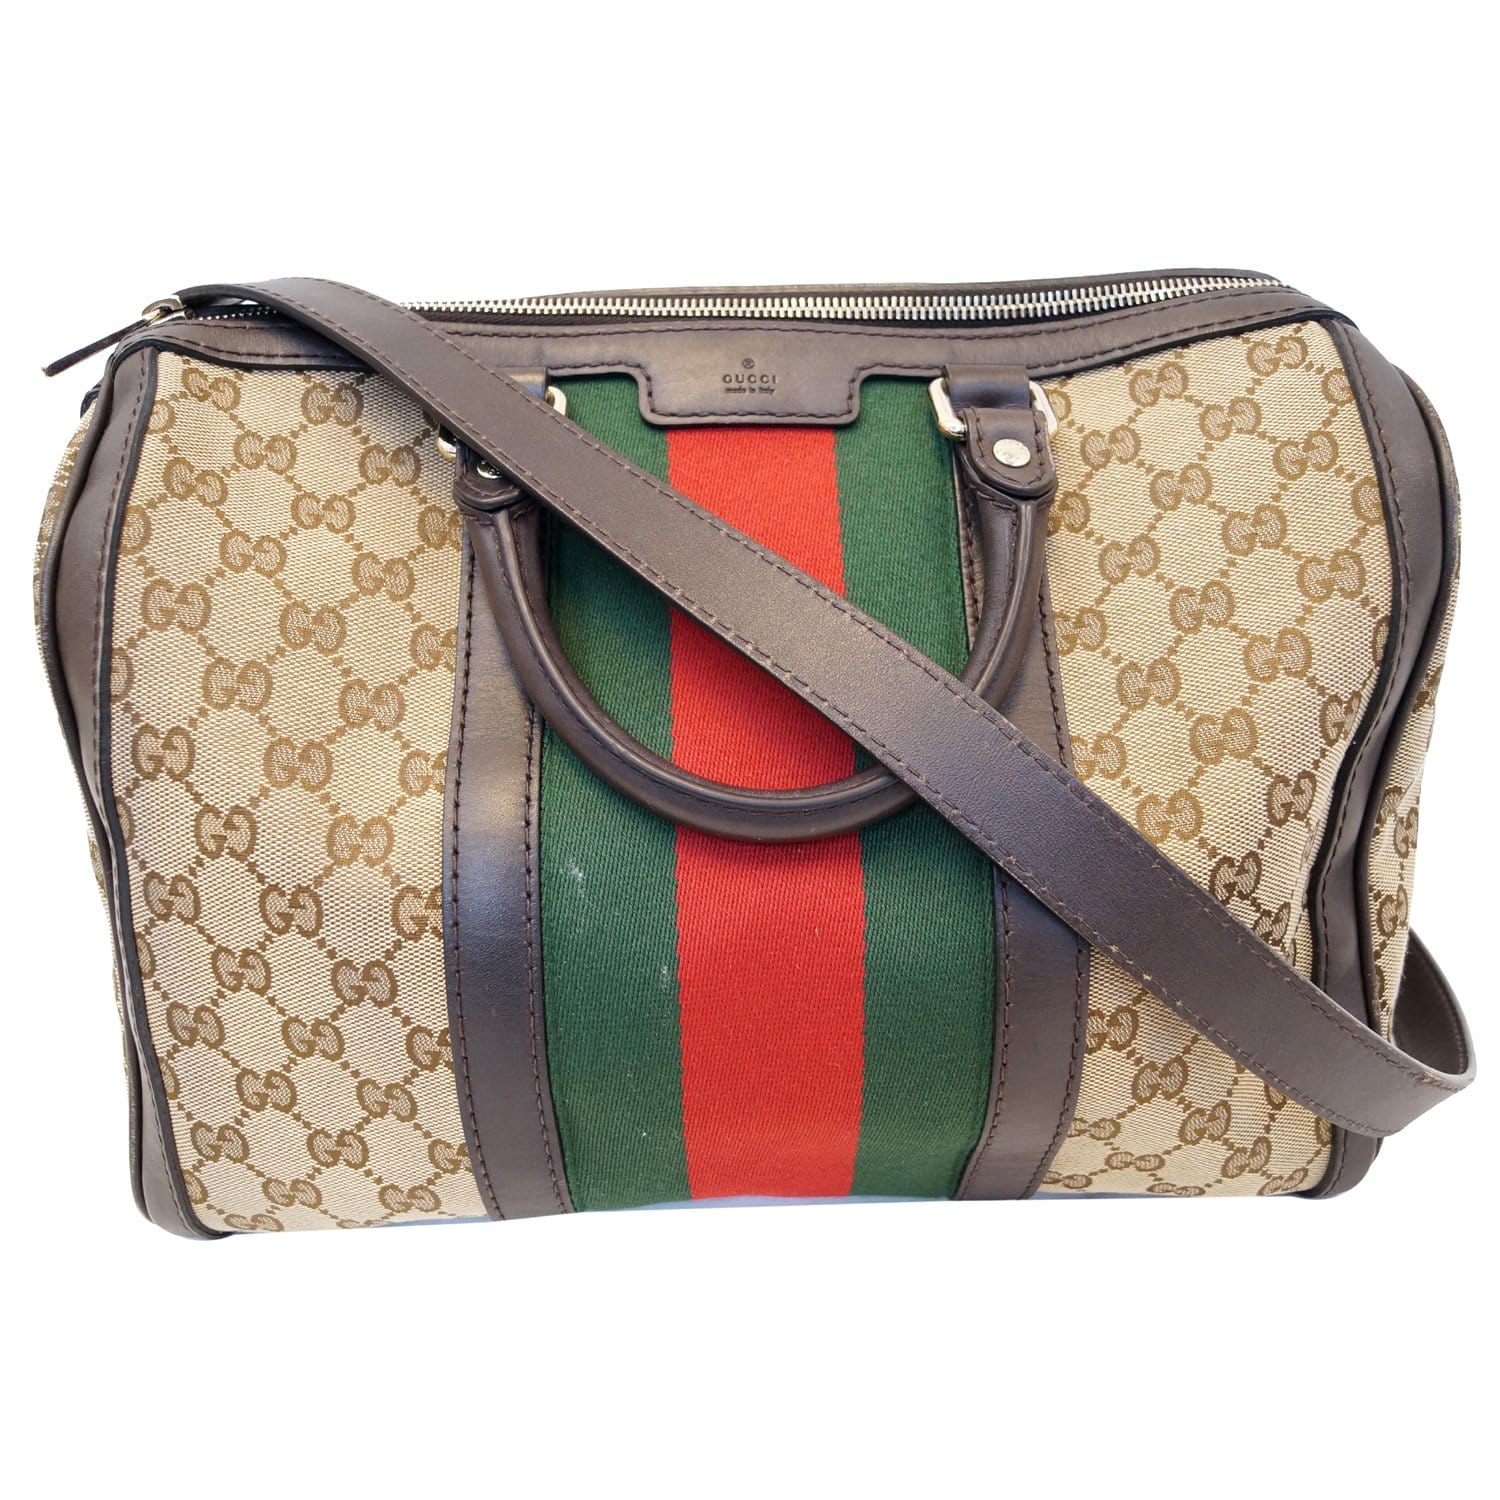 Gucci Classic Boston Bag